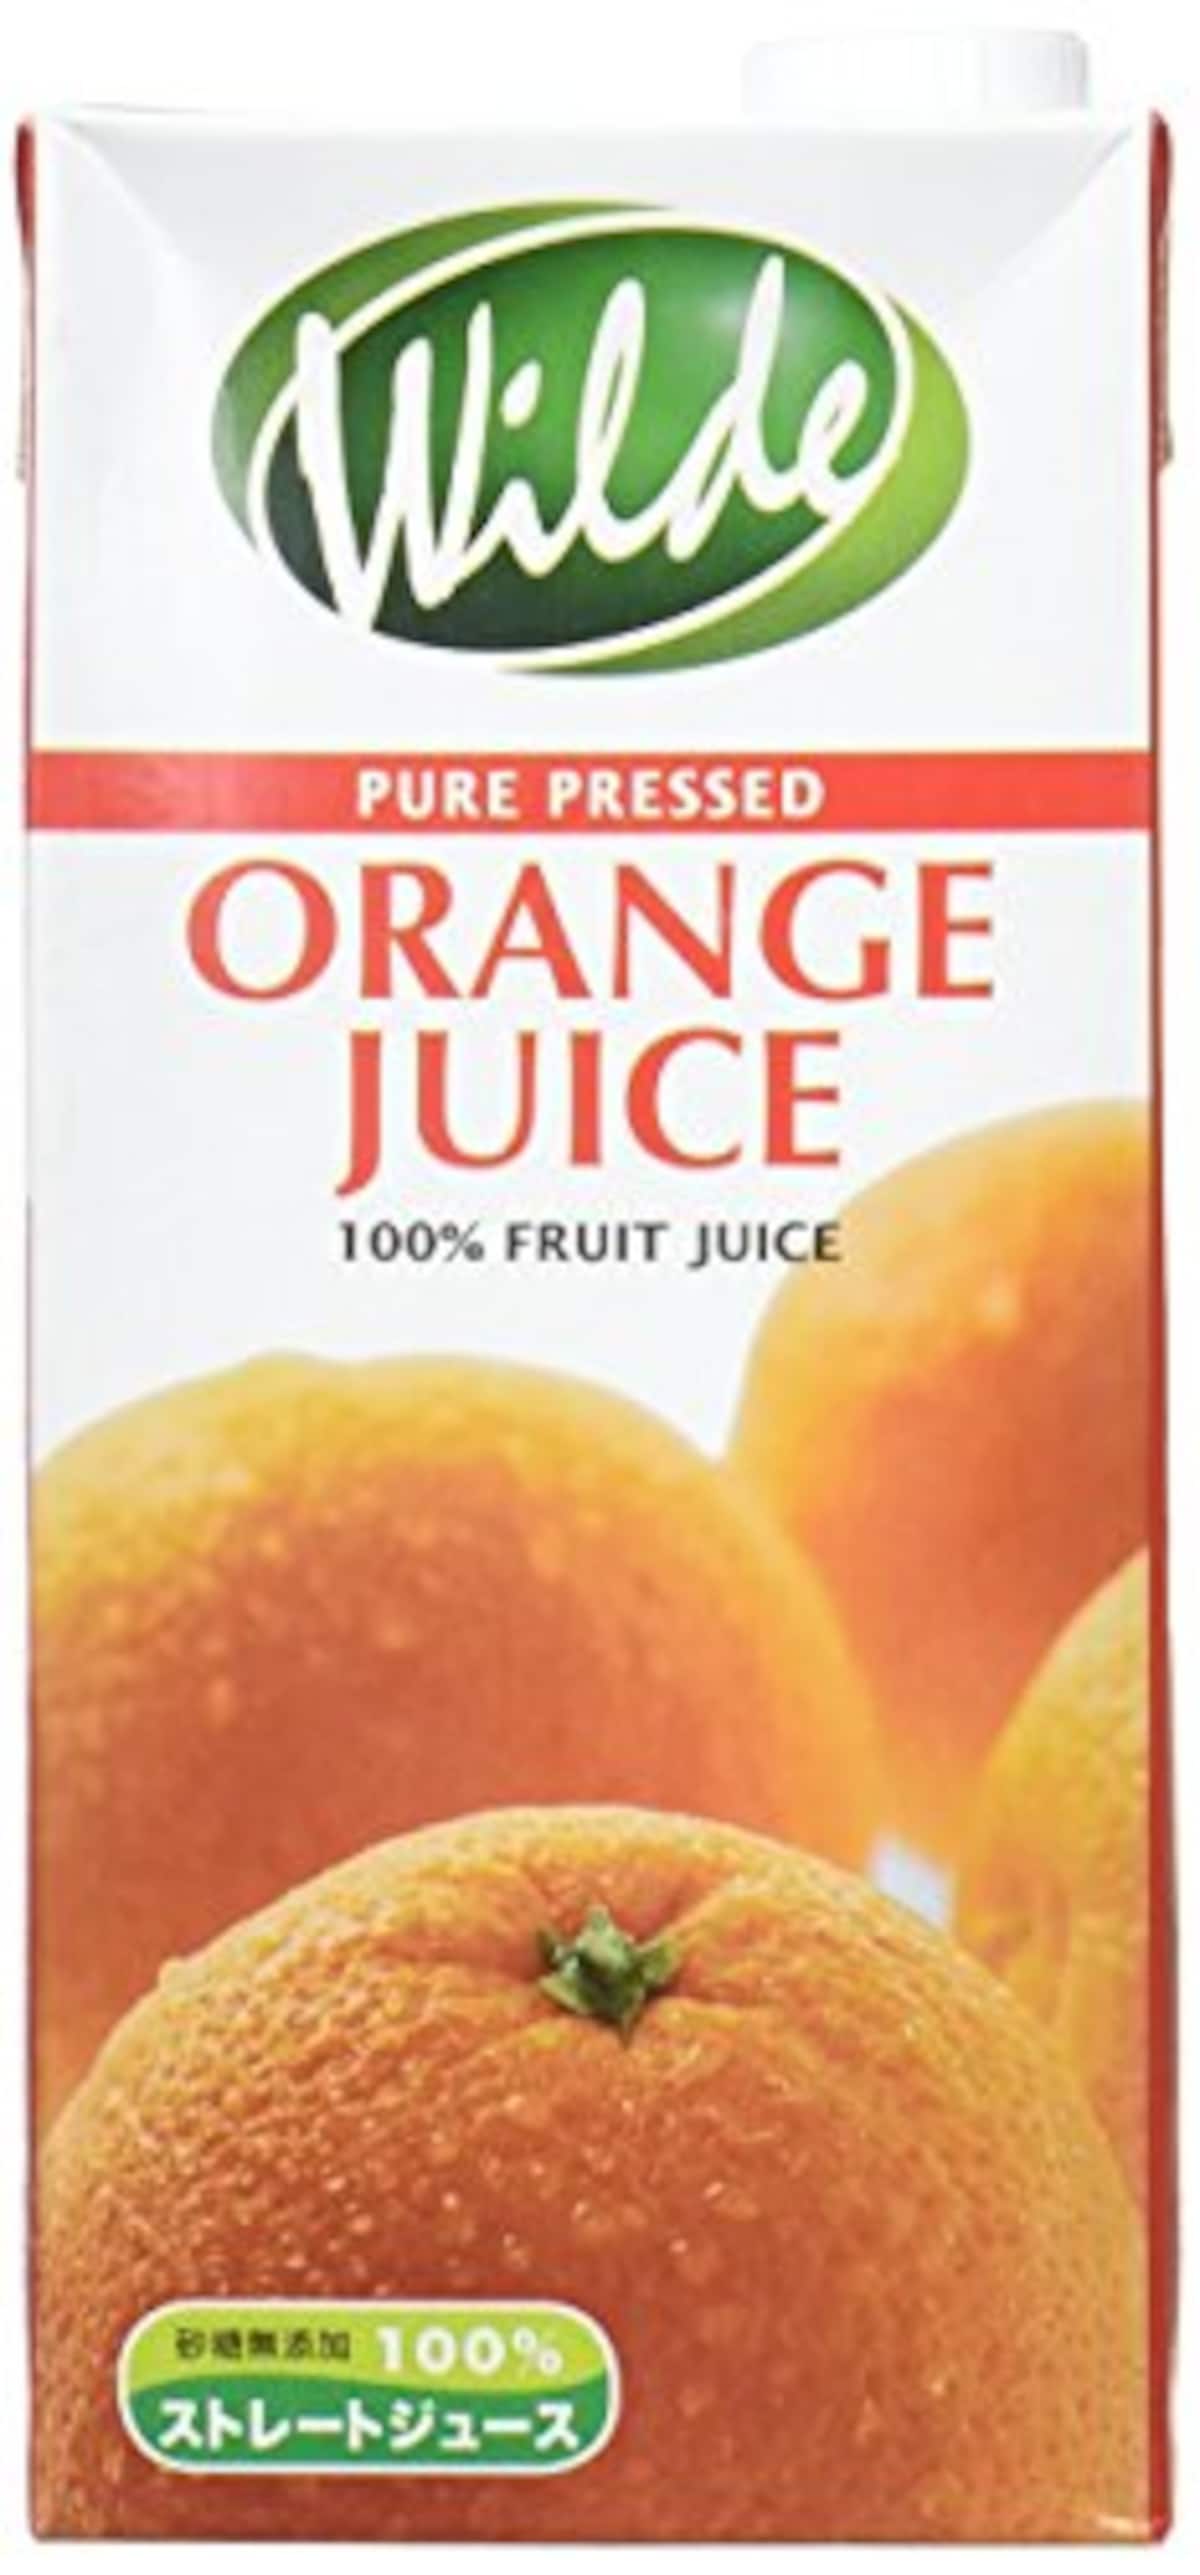 ストレートジュース・オレンジ